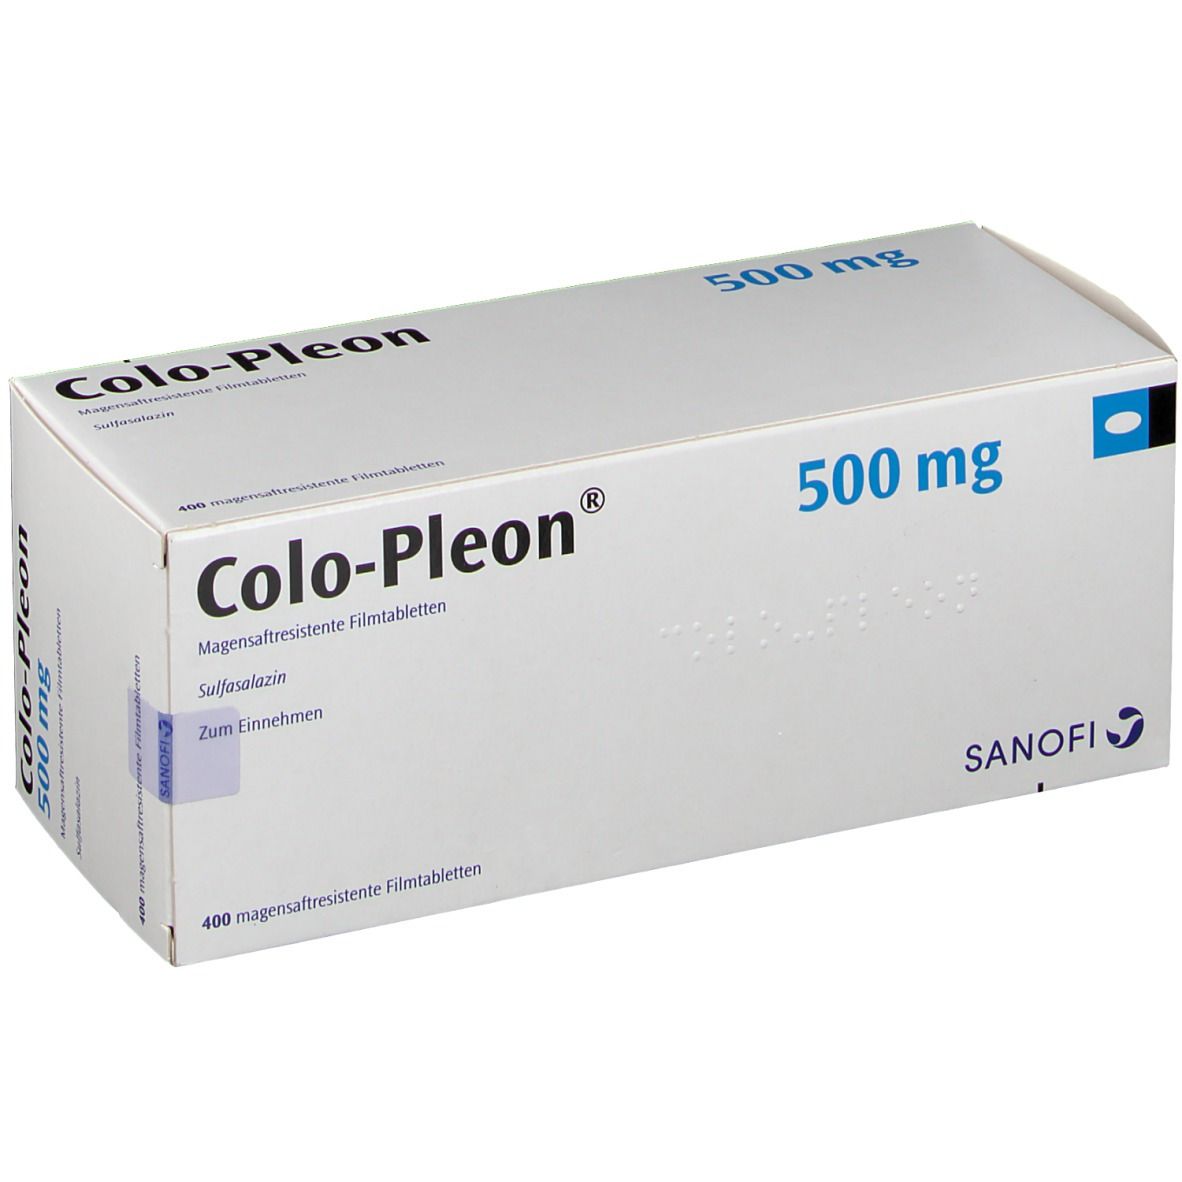 Colo-Pleon® 500 mg